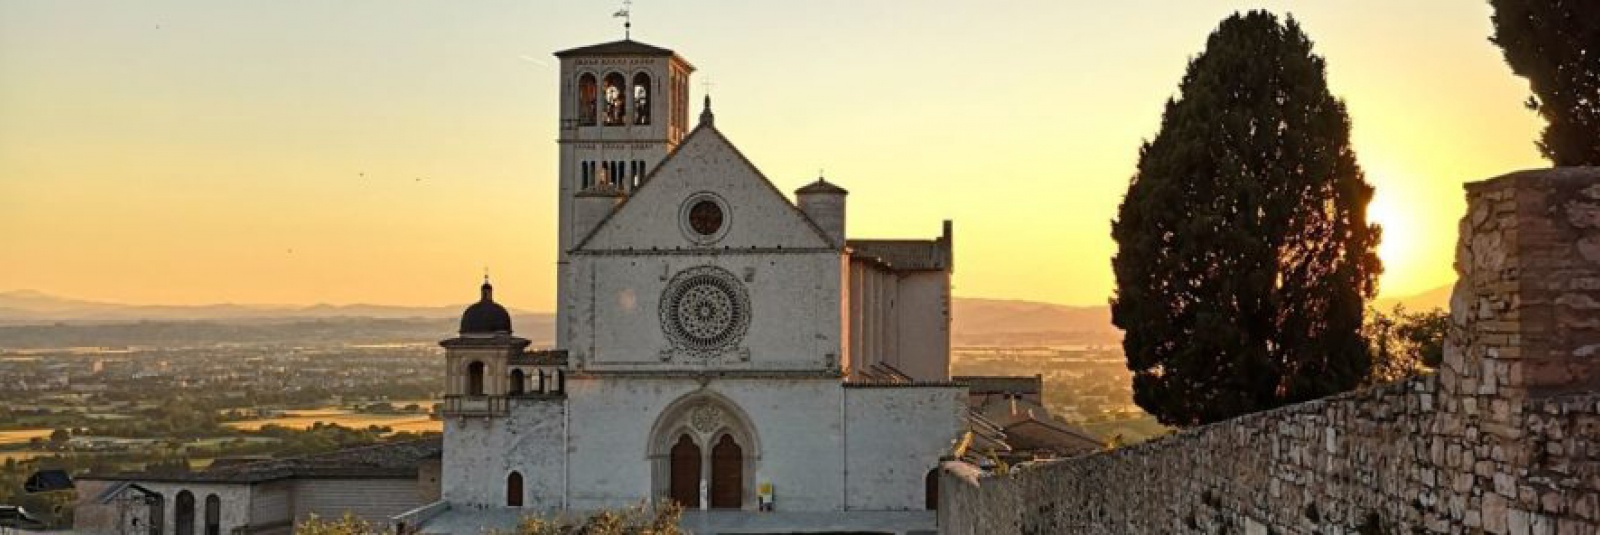 Umbria în 3 zile: artă, natură și gastronomie